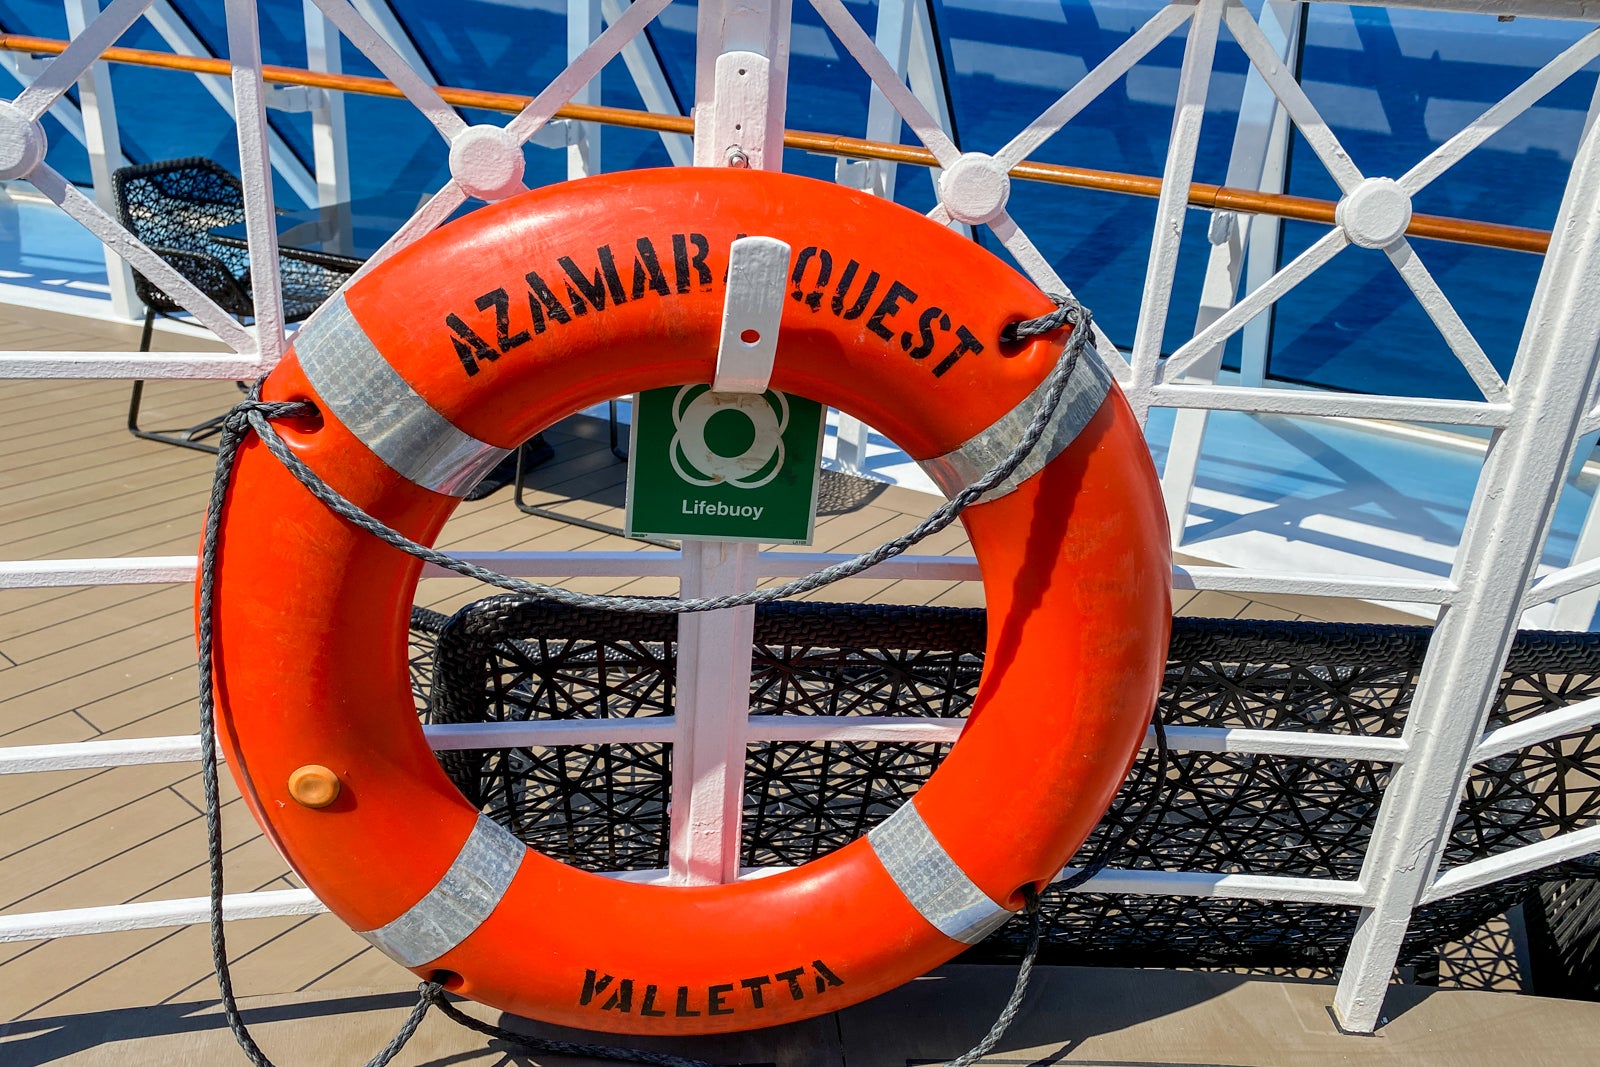 azamara world cruise